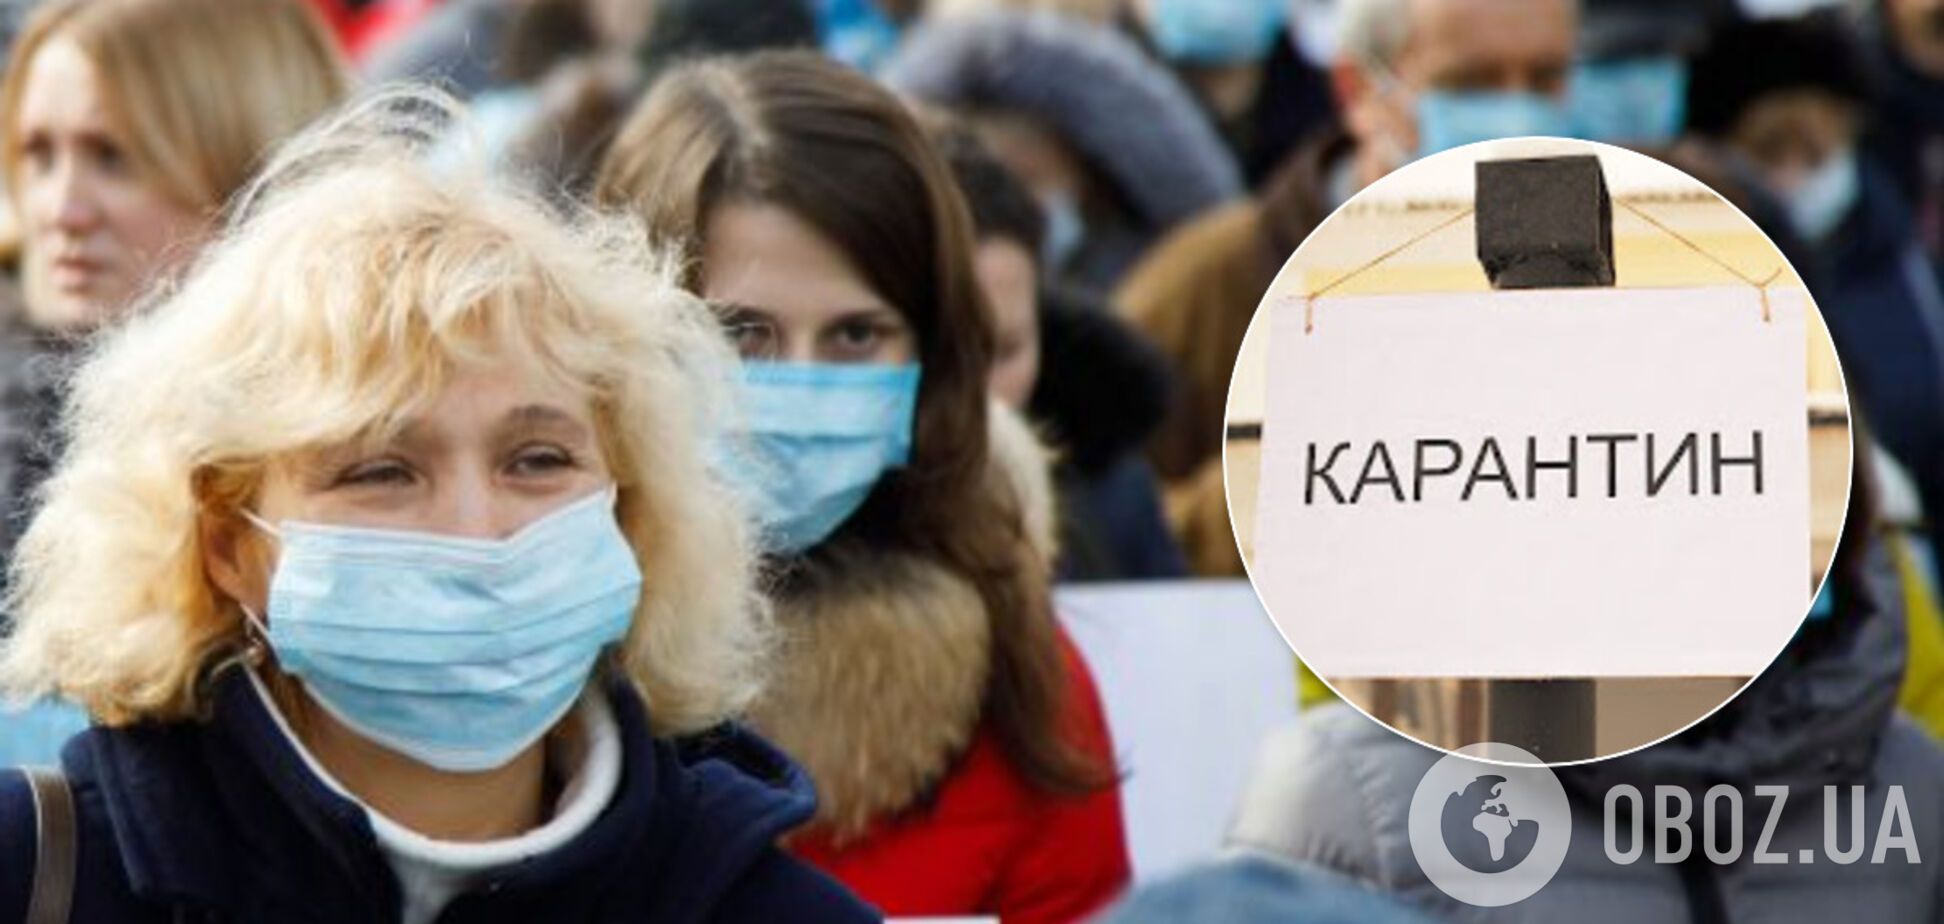 Степанов: из-за коронавируса украинцы еще долго будут ходить в масках